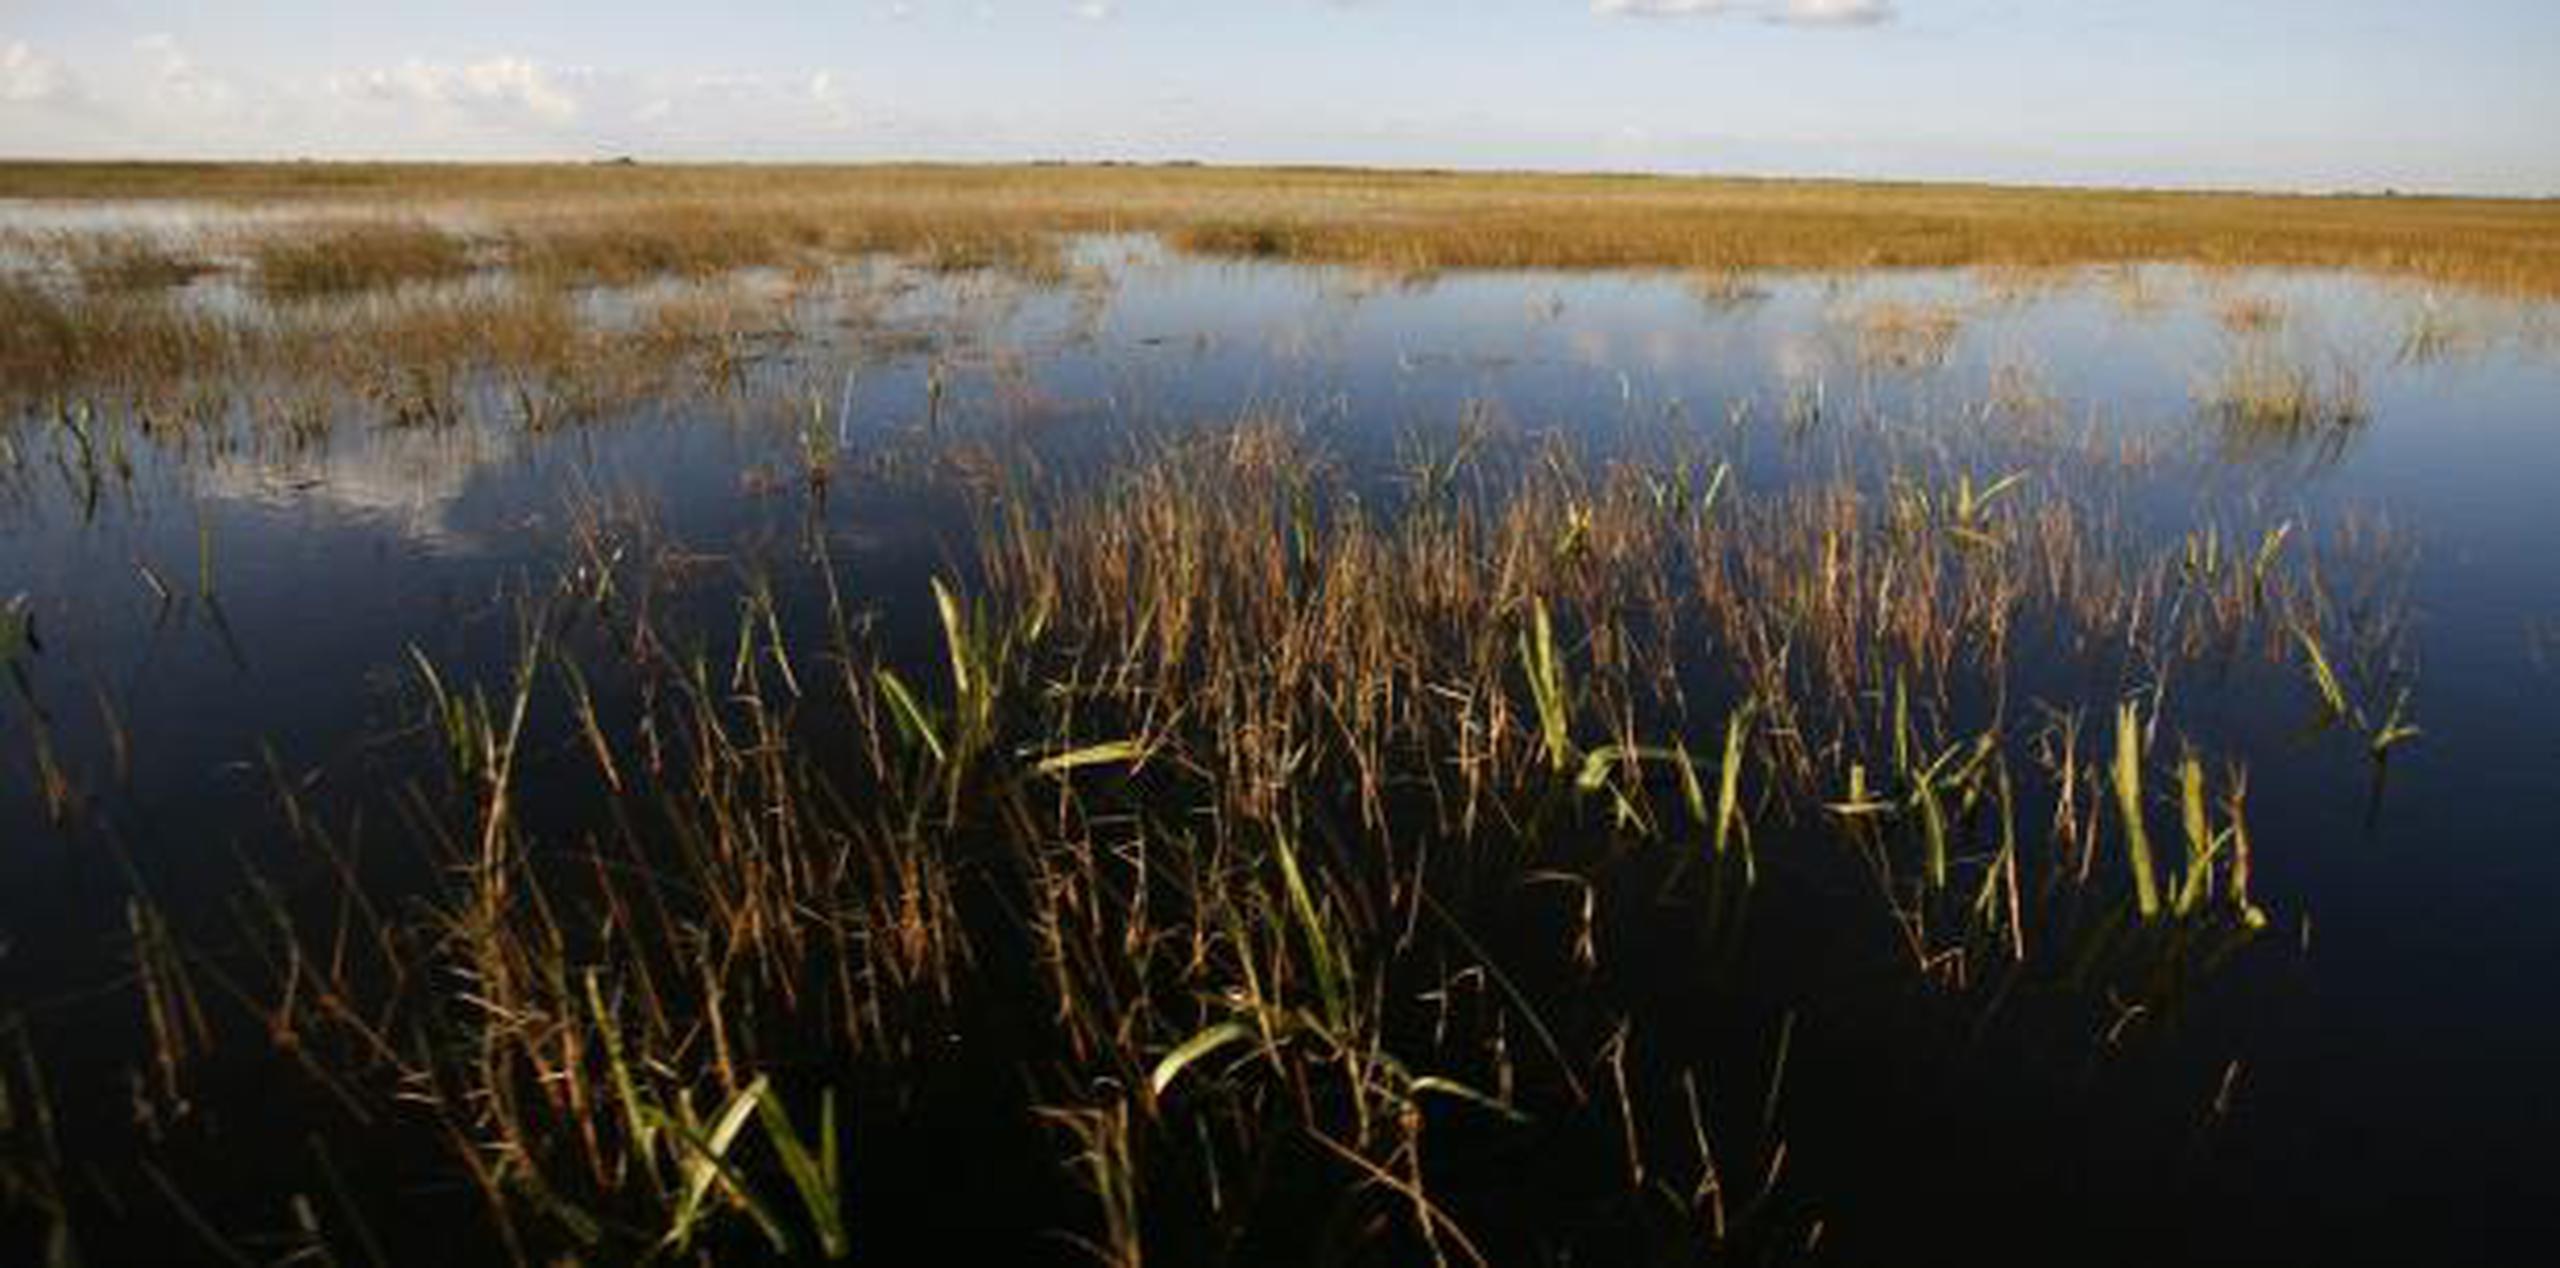 Los Everglades son un gigantesco humedal declarado reserva natural y no se permite perforar en busca de petróleo desde 1967. (AP / Brynn Anderson)